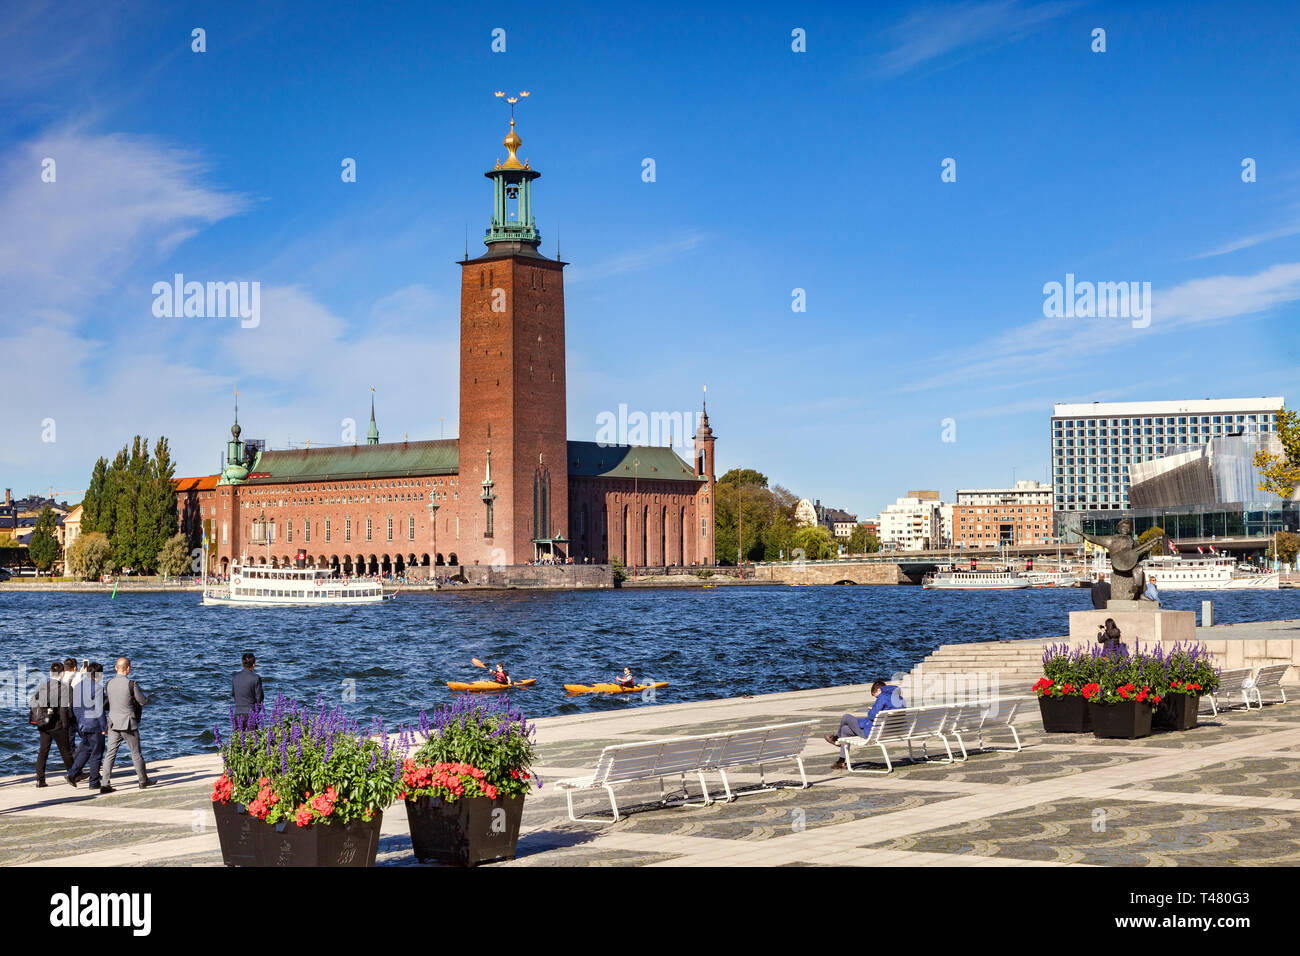 16 Septembre 2018 : Stockholm, Suède - L'hôtel de ville, l'un des plus célèbres édifices, et d'accueil du Prix Nobel Banquet. Deux kayaks à l'eau. Banque D'Images